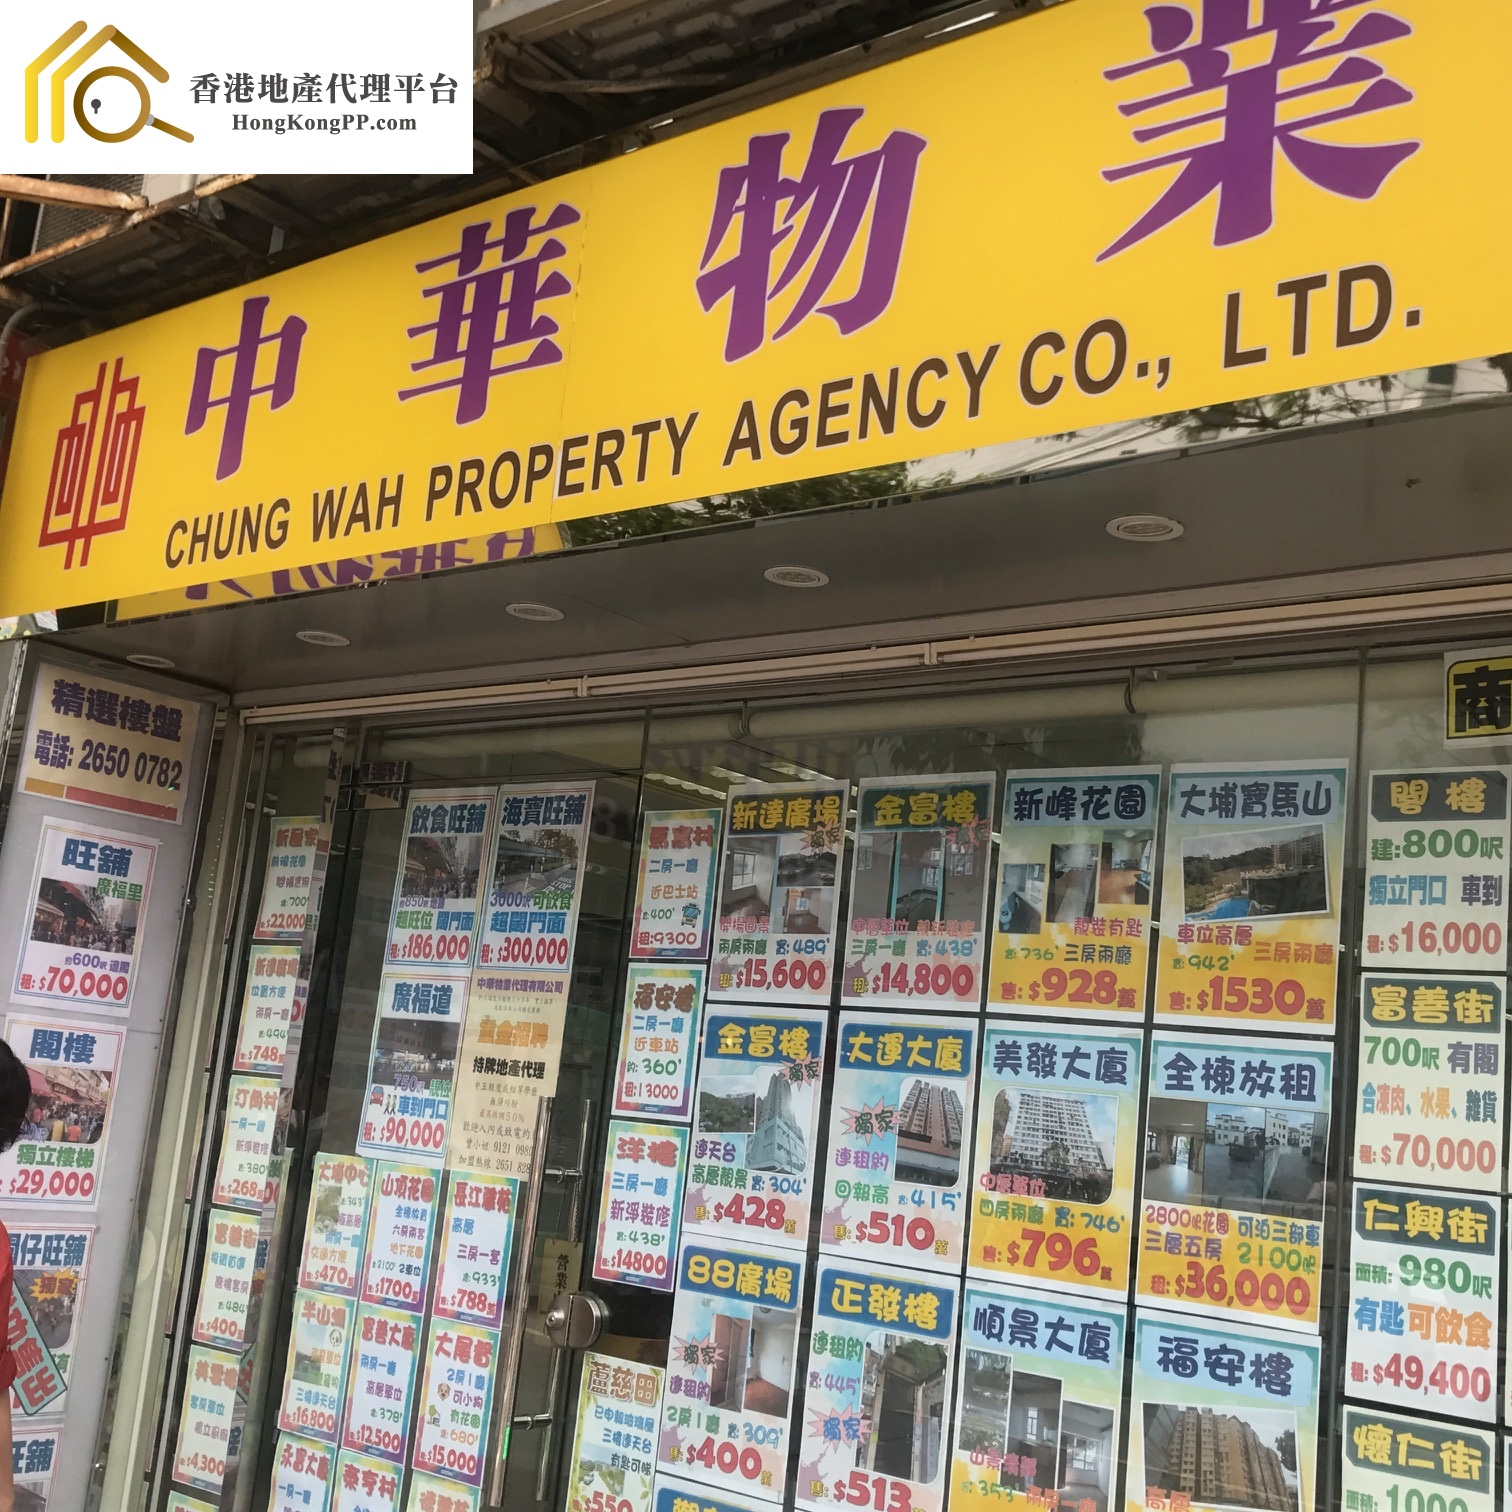 村屋地產代理: 中華物業代理 Chung Wah Property Agency